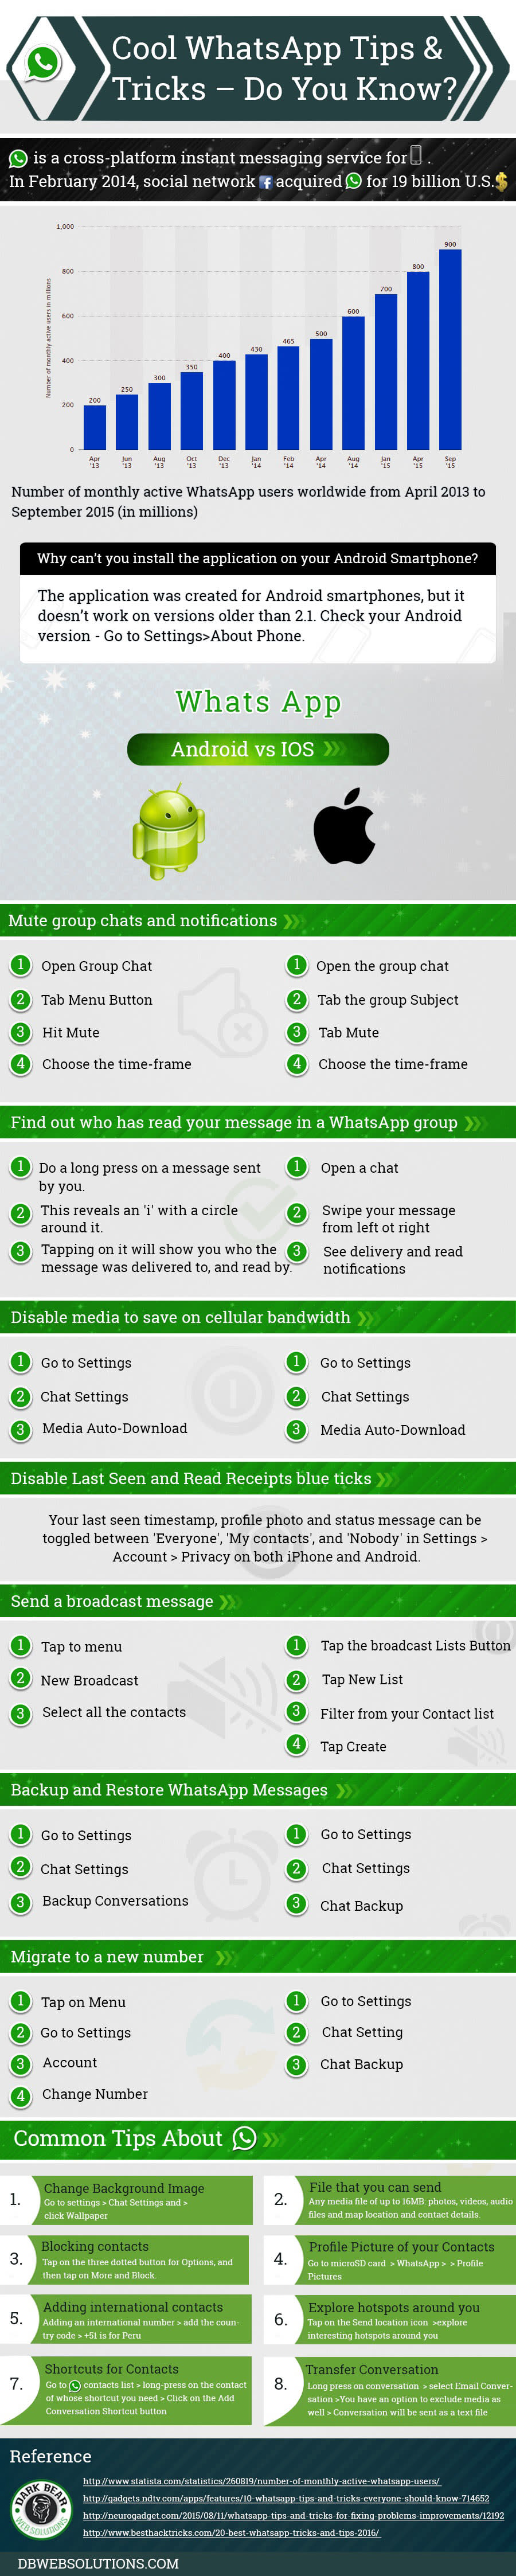 whatsapp-tips-tricks-hacks